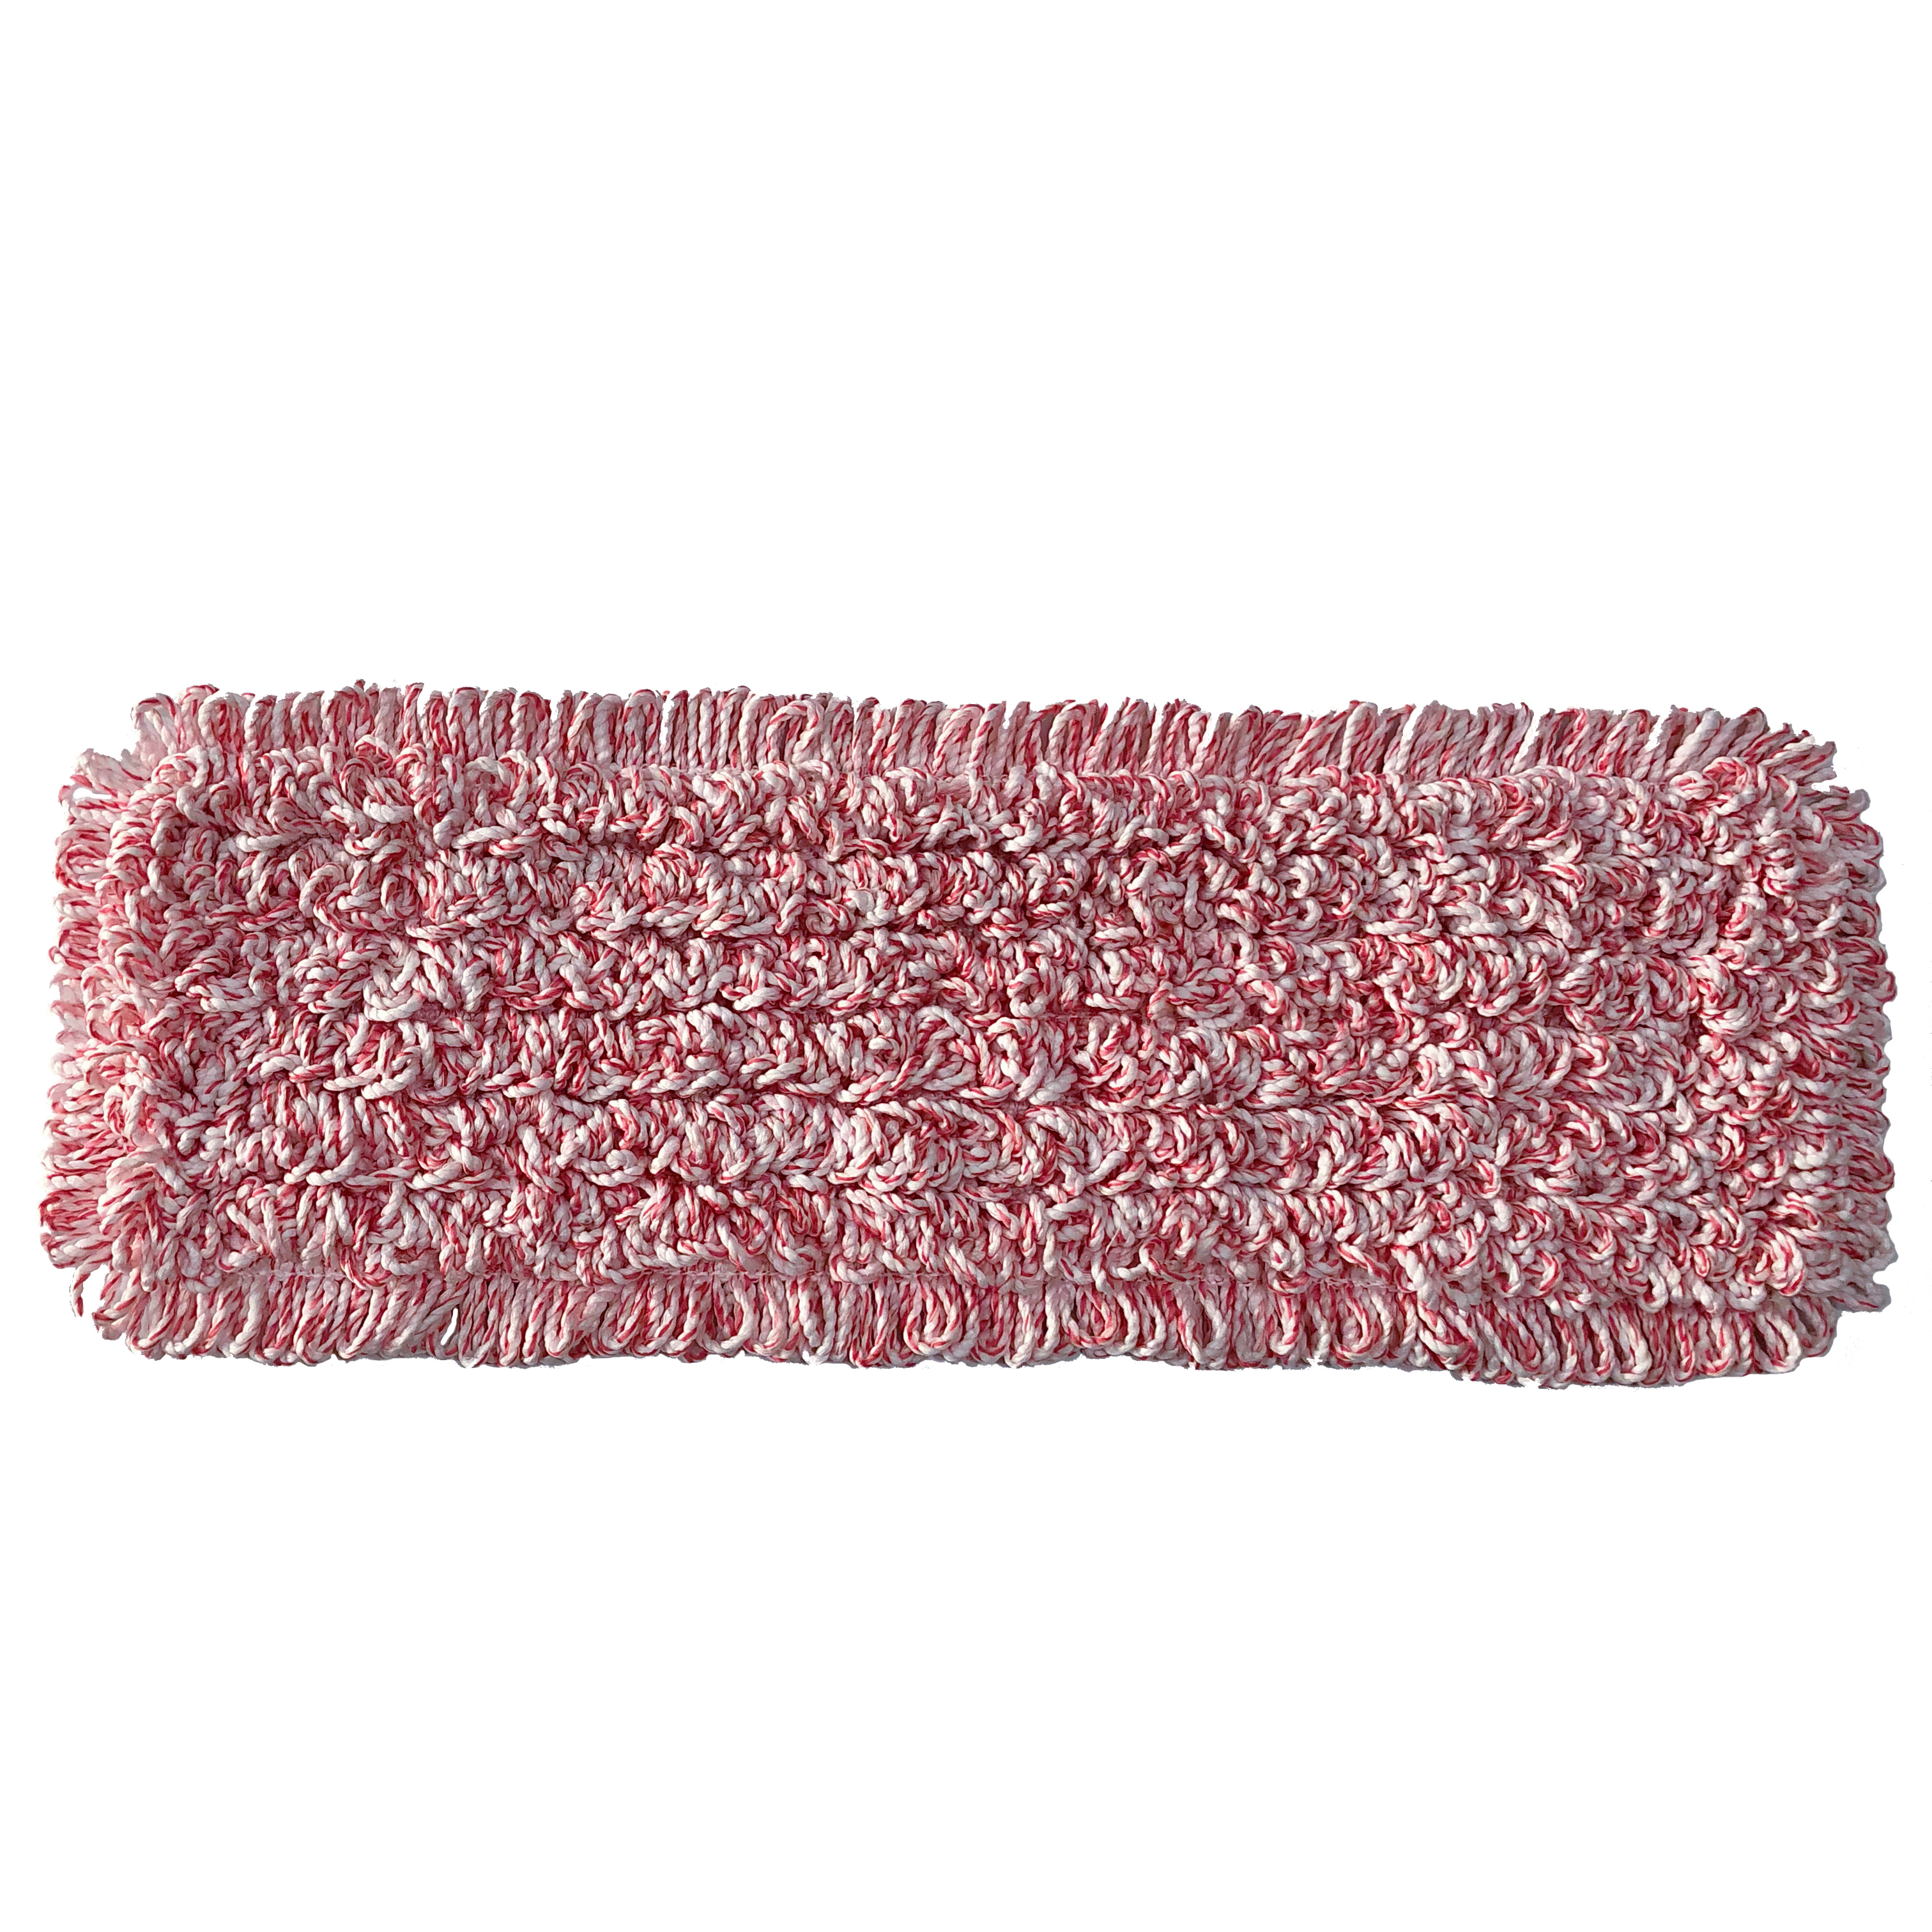 [MOP KNIGHT] Mikrofaser Baumwoll Mischgewebe Mop Tritex 50 cm